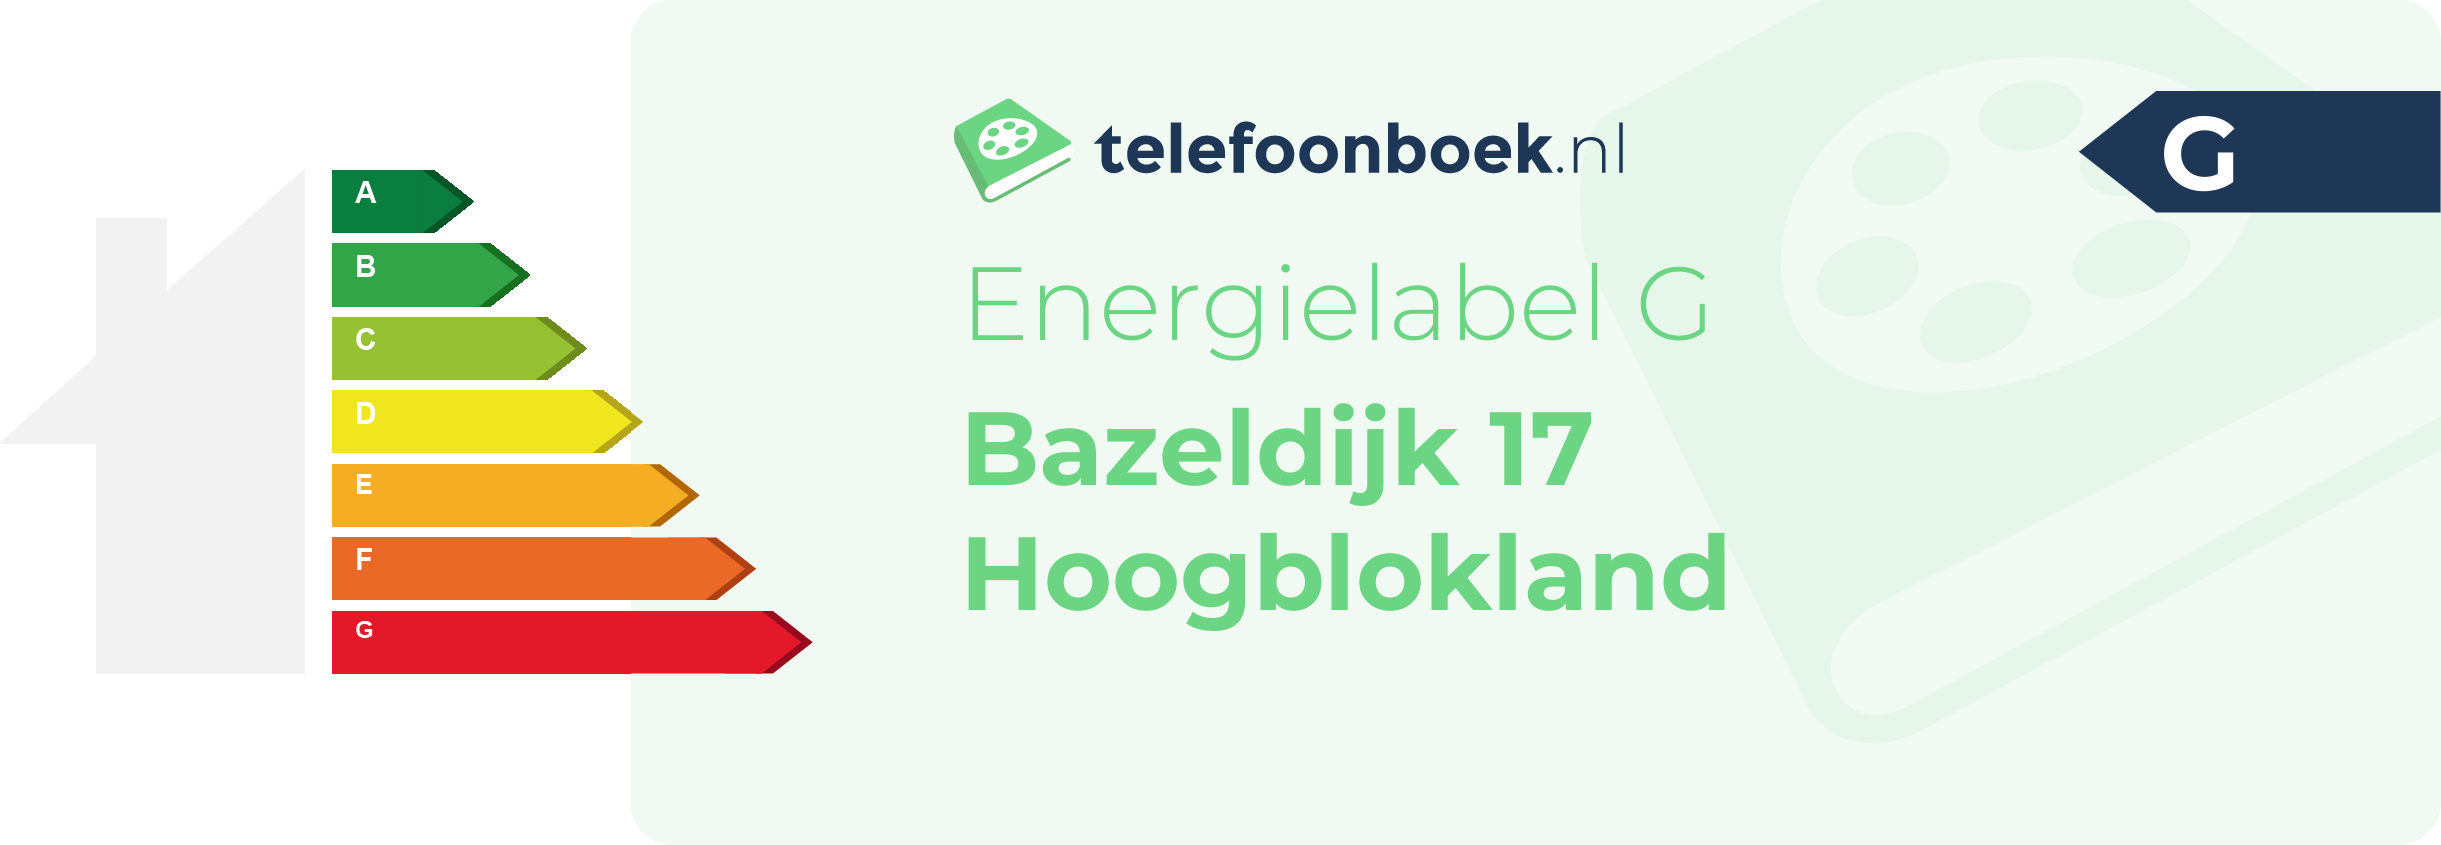 Energielabel Bazeldijk 17 Hoogblokland